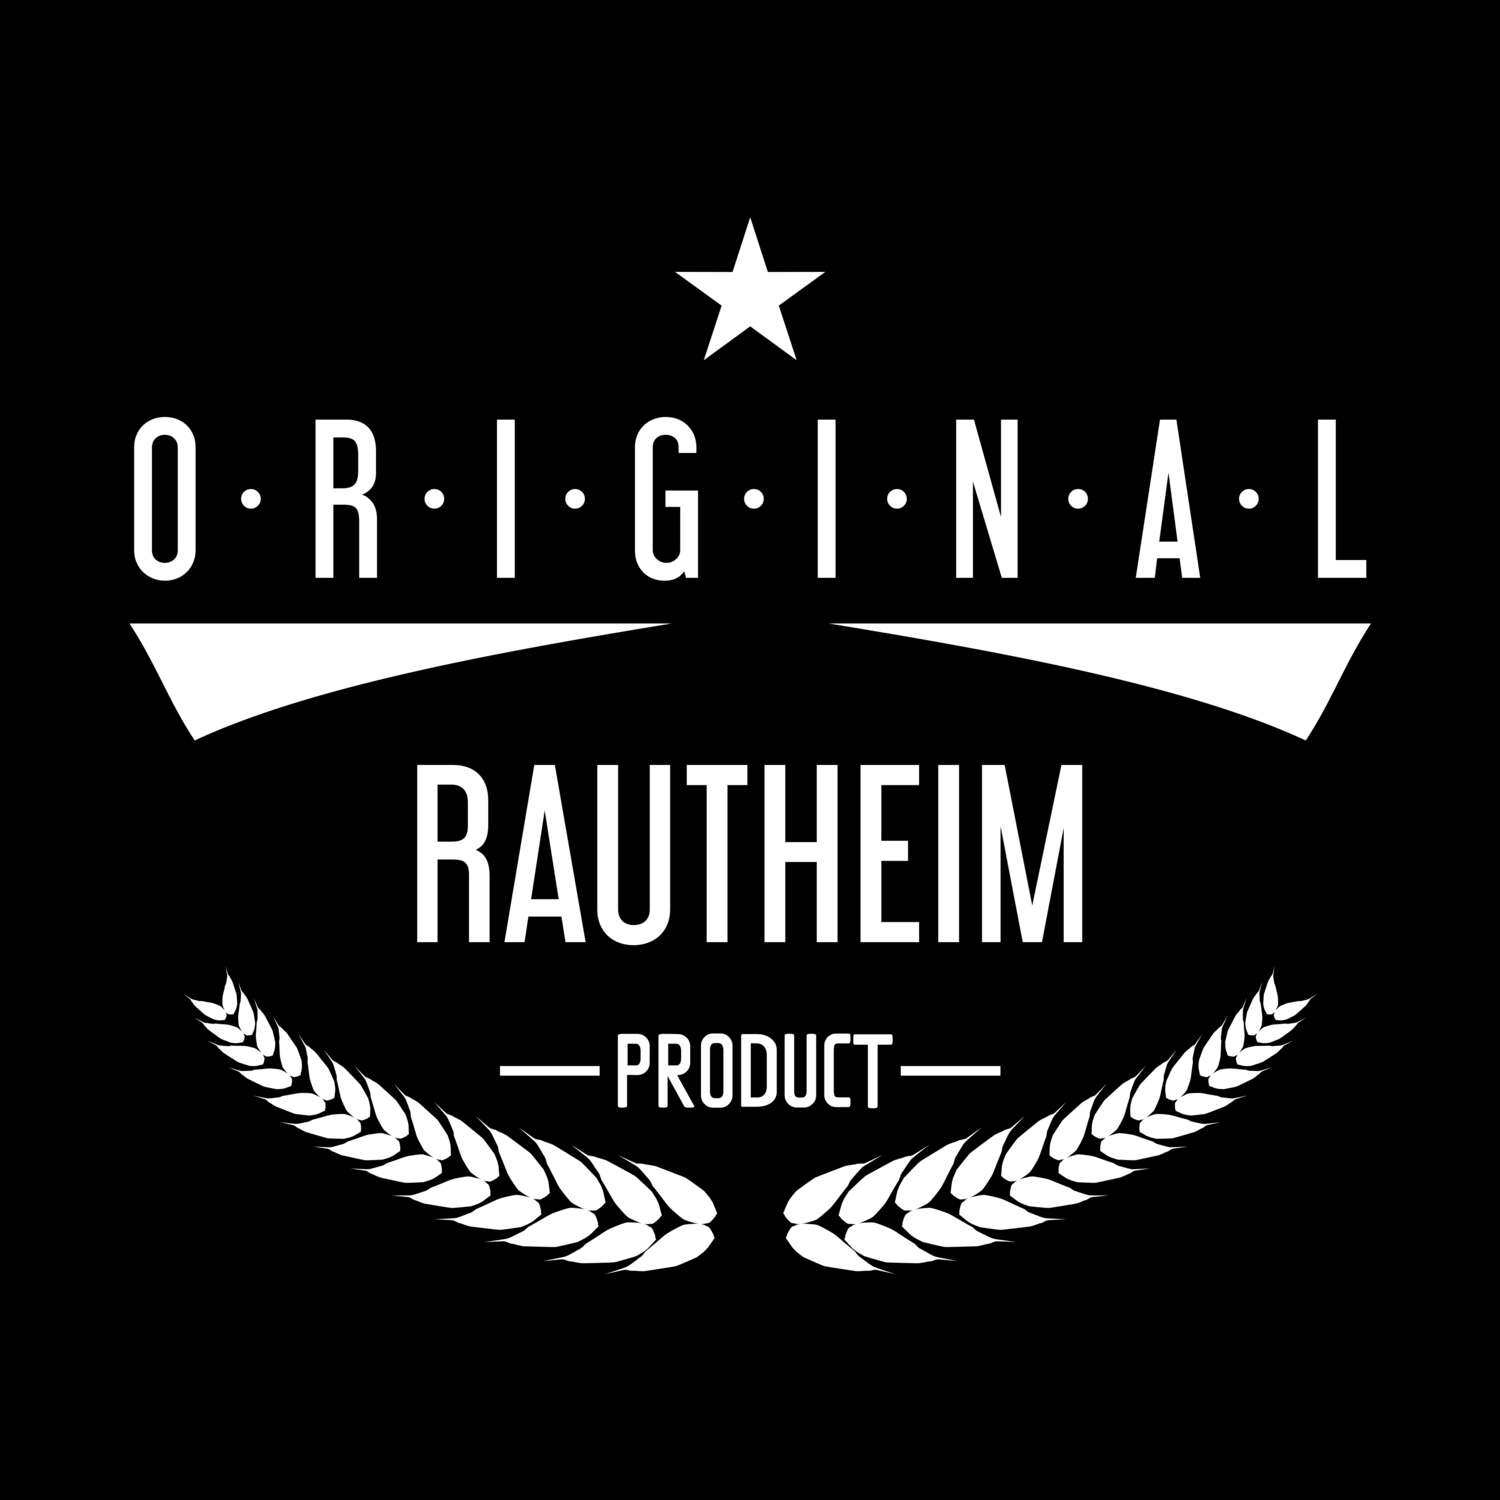 Rautheim T-Shirt »Original Product«